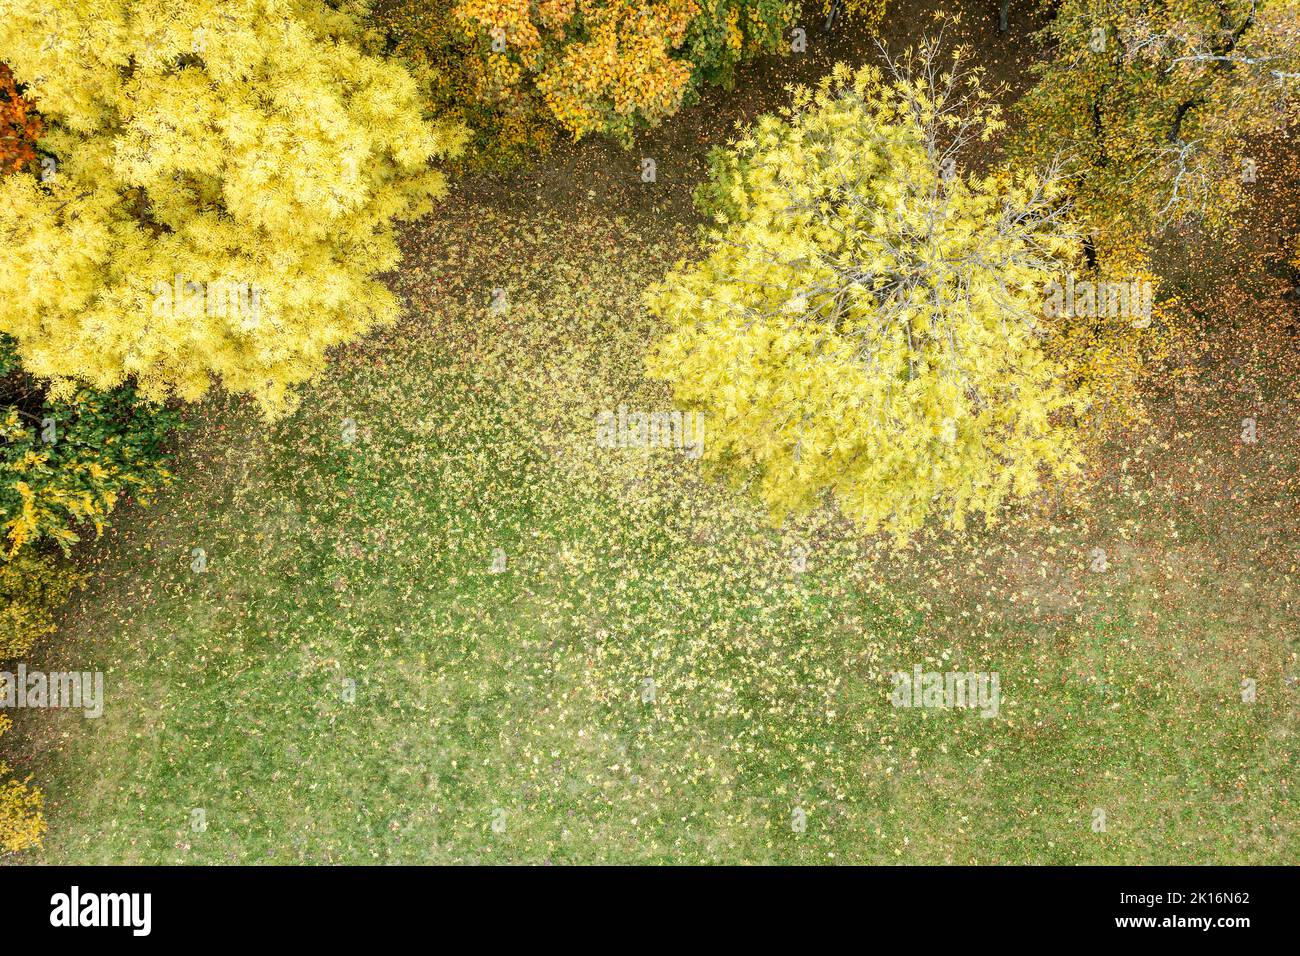 brillantes y coloridas copas de árboles sobre el fondo del césped del parque, cubiertas con hojas caídas. vista aérea de la parte superior. Foto de stock